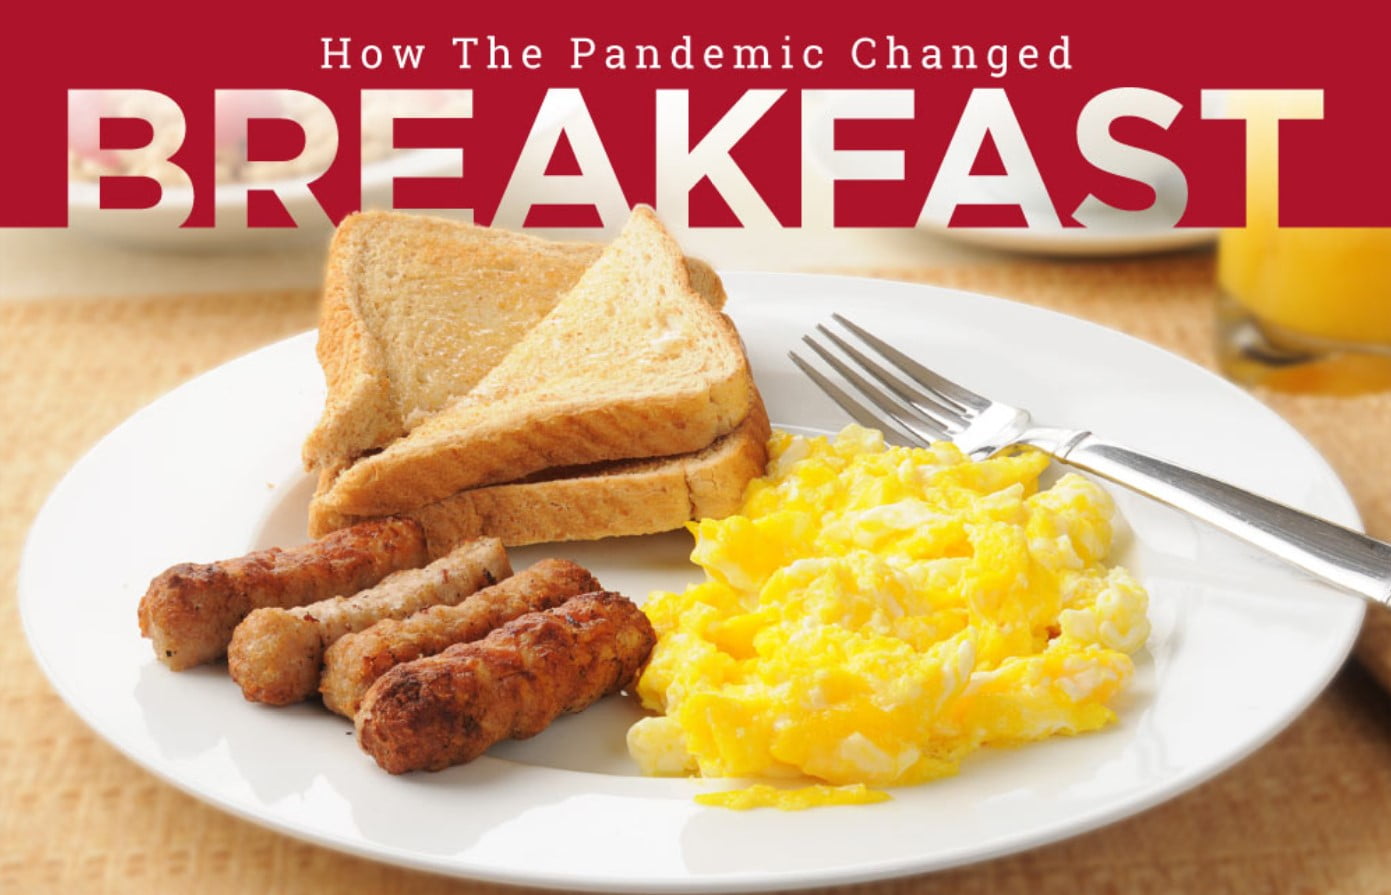 American Breakfast Habits